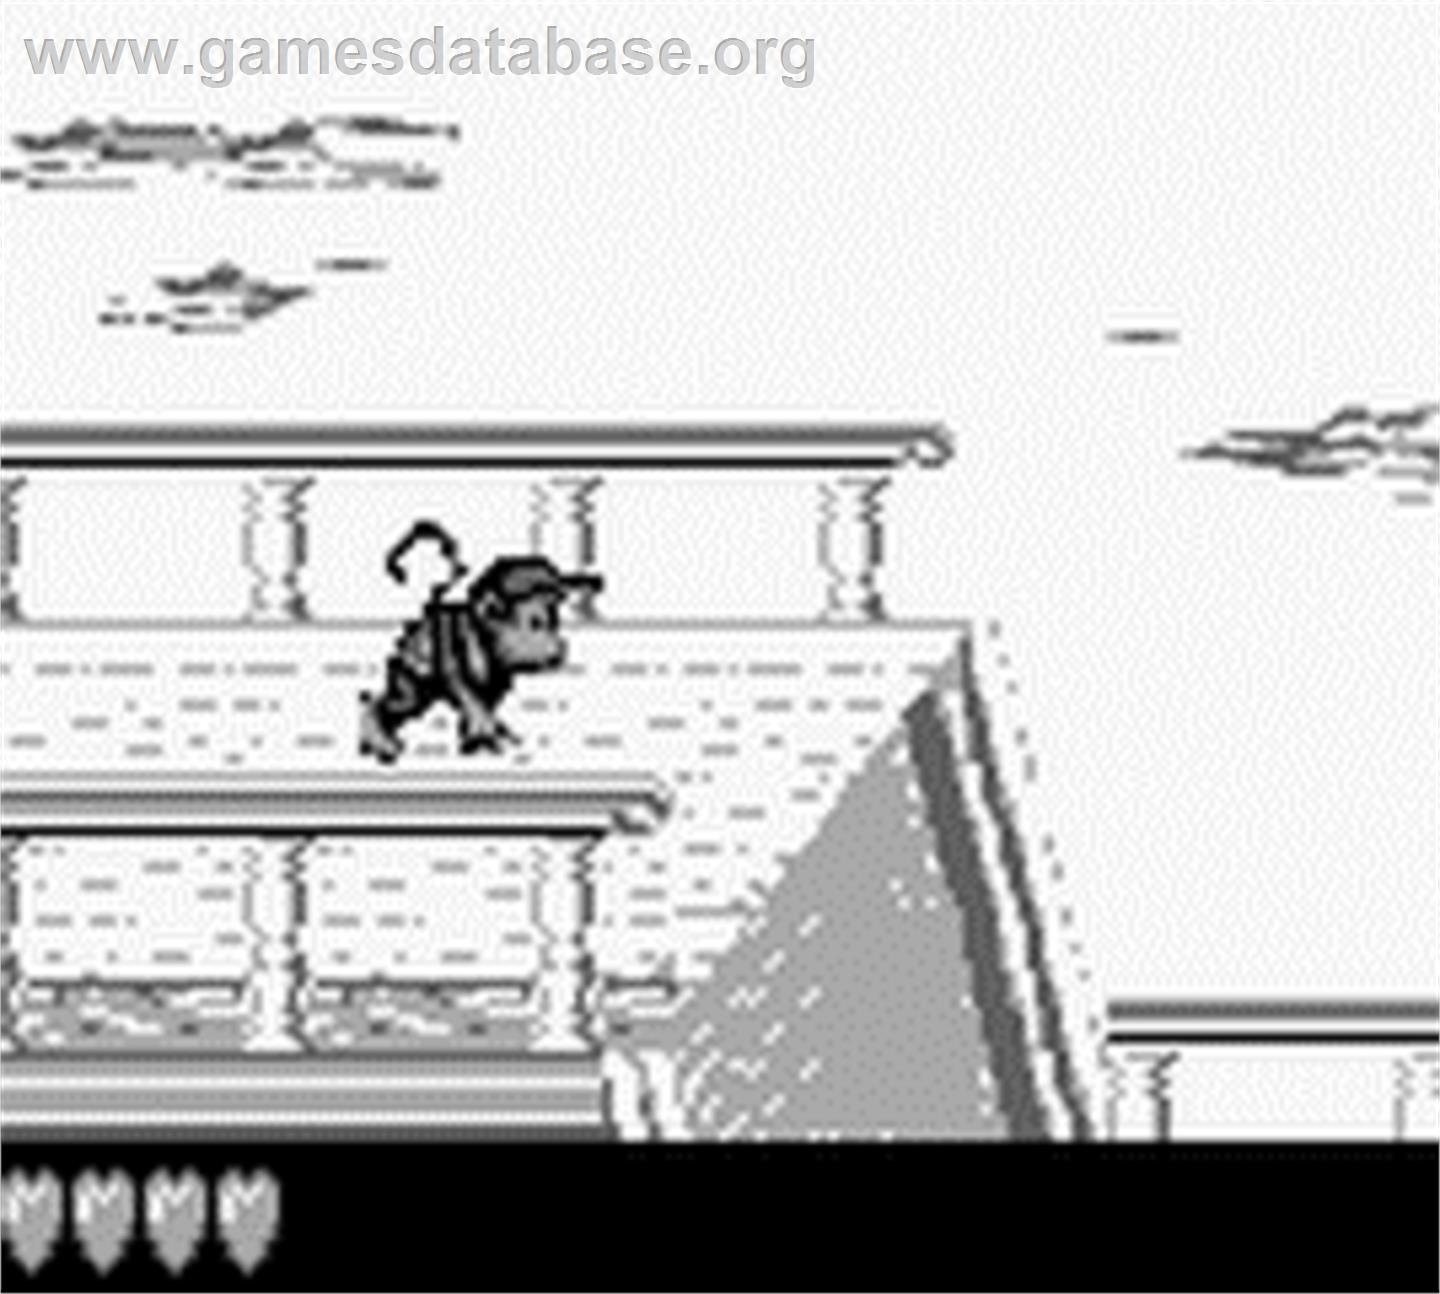 Donkey Kong Land - Nintendo Game Boy - Artwork - In Game